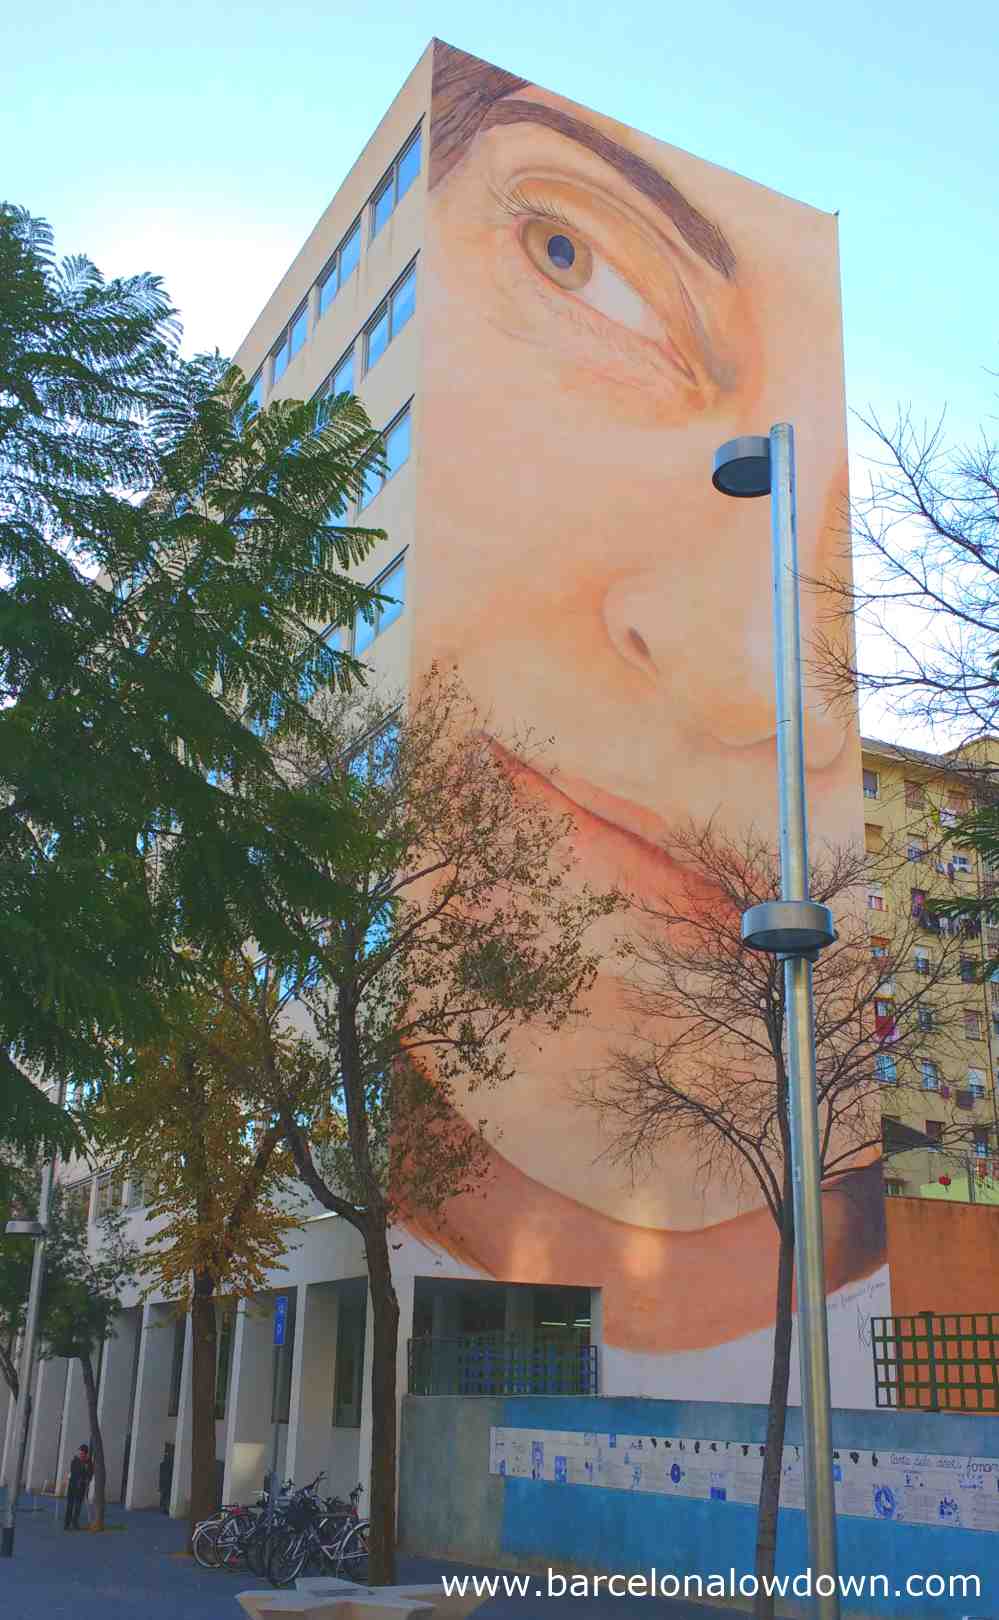 Giant street art portrait of a woman by Cuban artist Jorge Rodriguez in Barcelona Spain